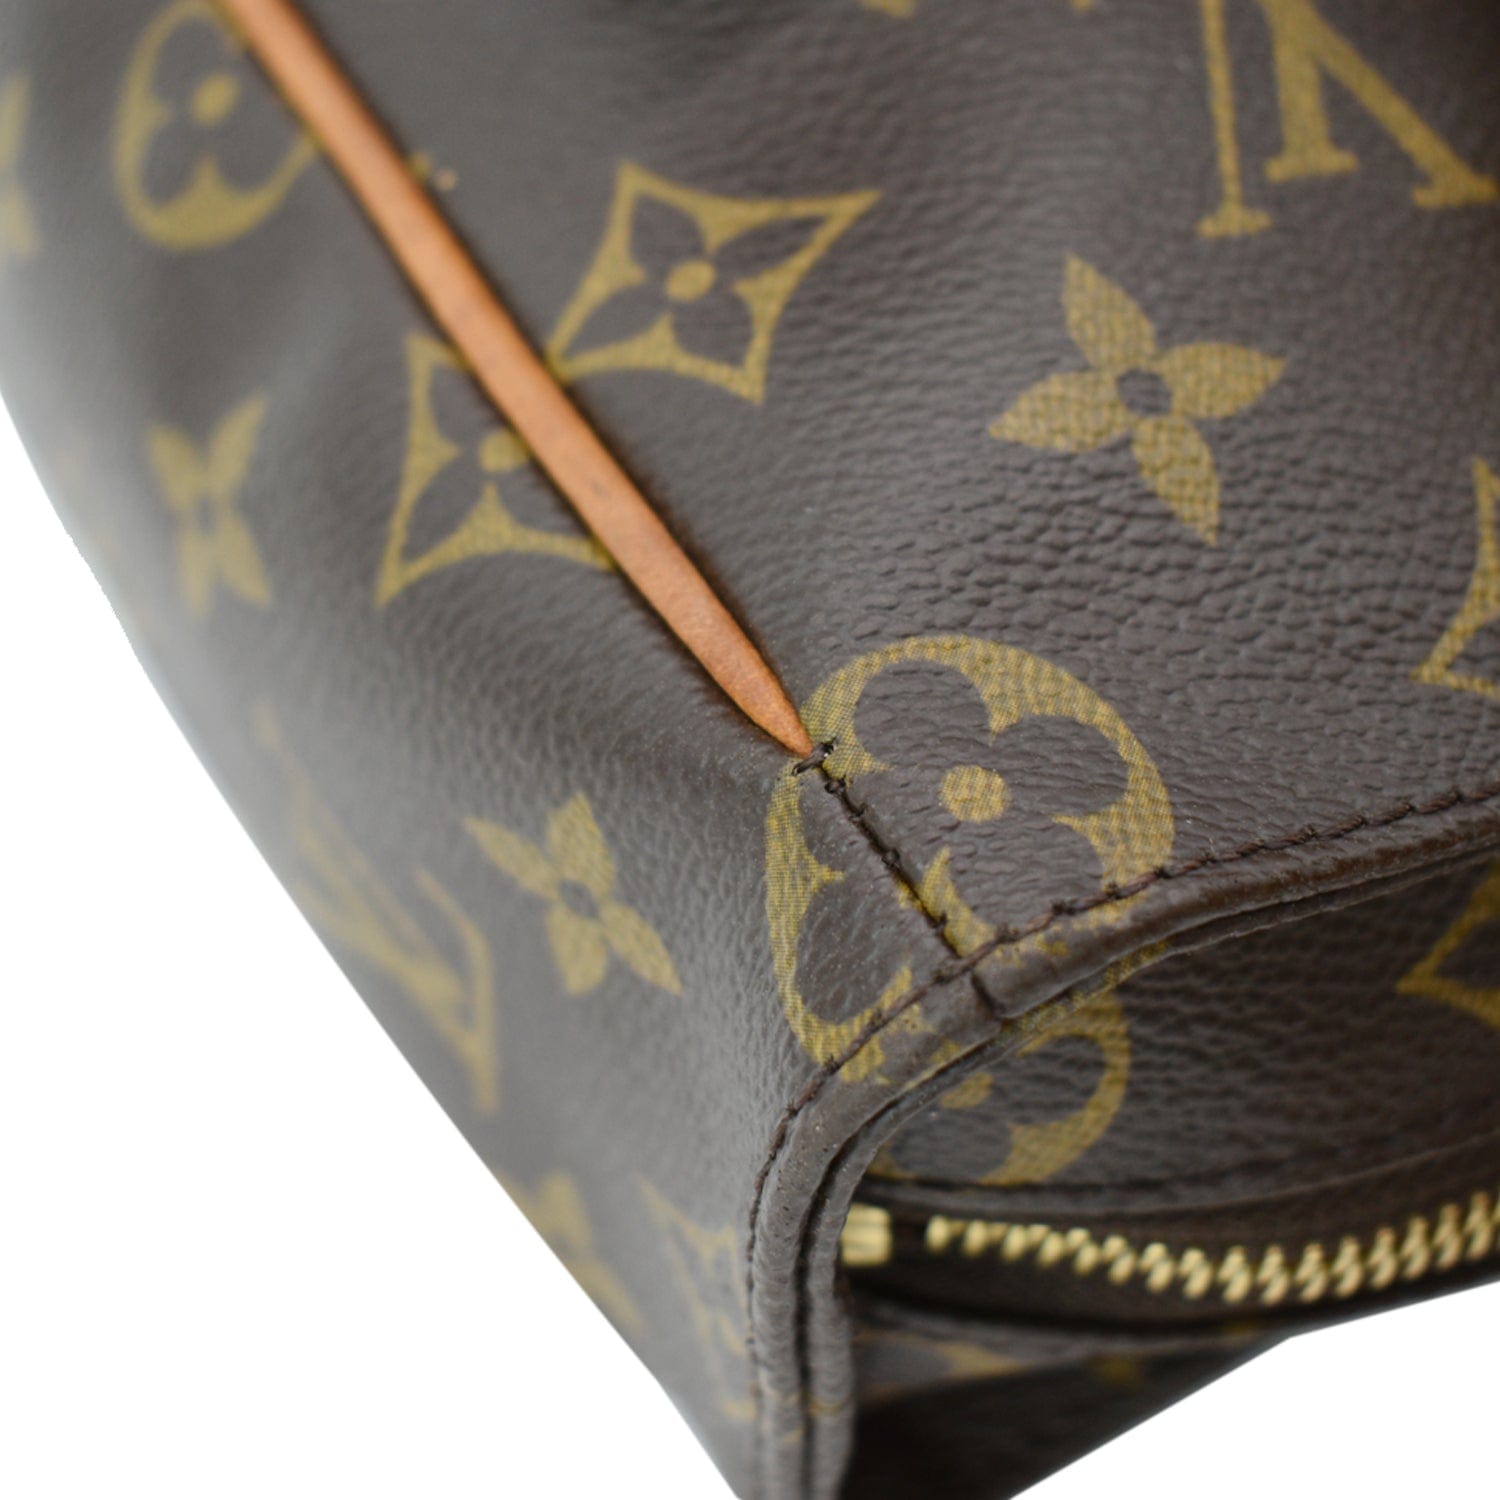 Louis Vuitton Monogram Canvas Viva Cite GM Shoulder Bag (SHF-20552